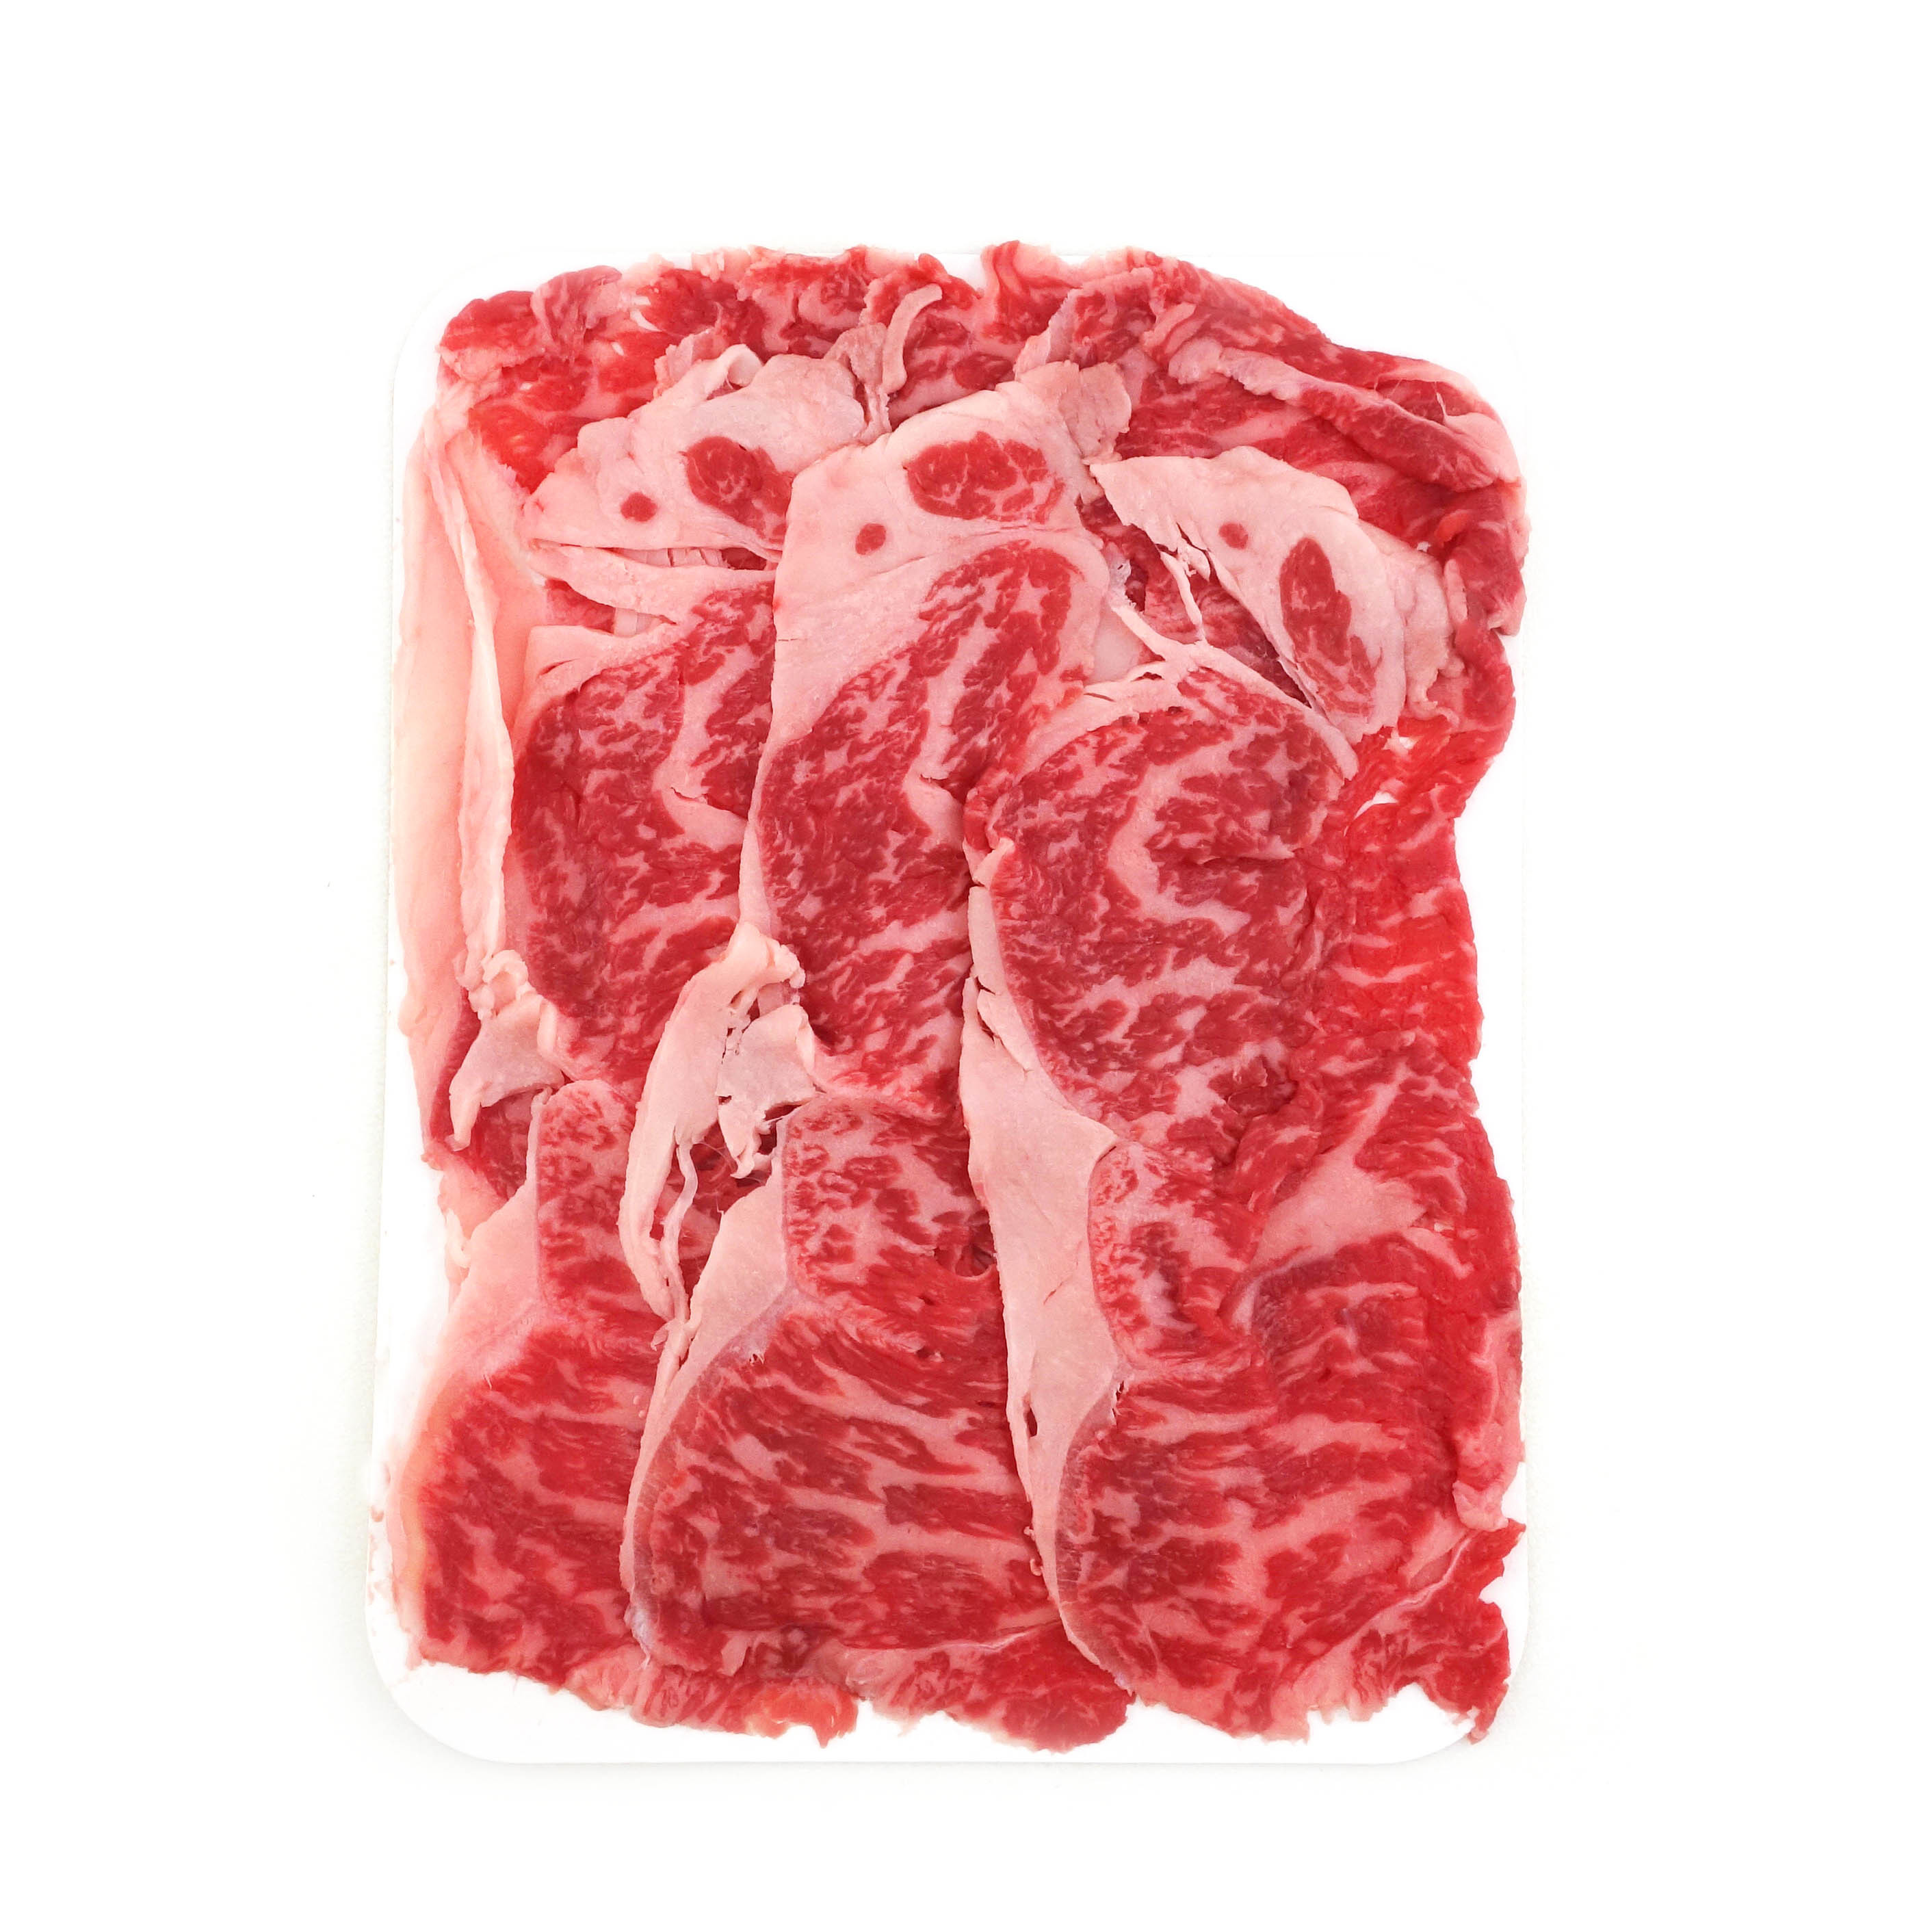 Frozen AUS Tajima Wagyu Beef Sliced Sirloin M7+ for hot pot 150g*